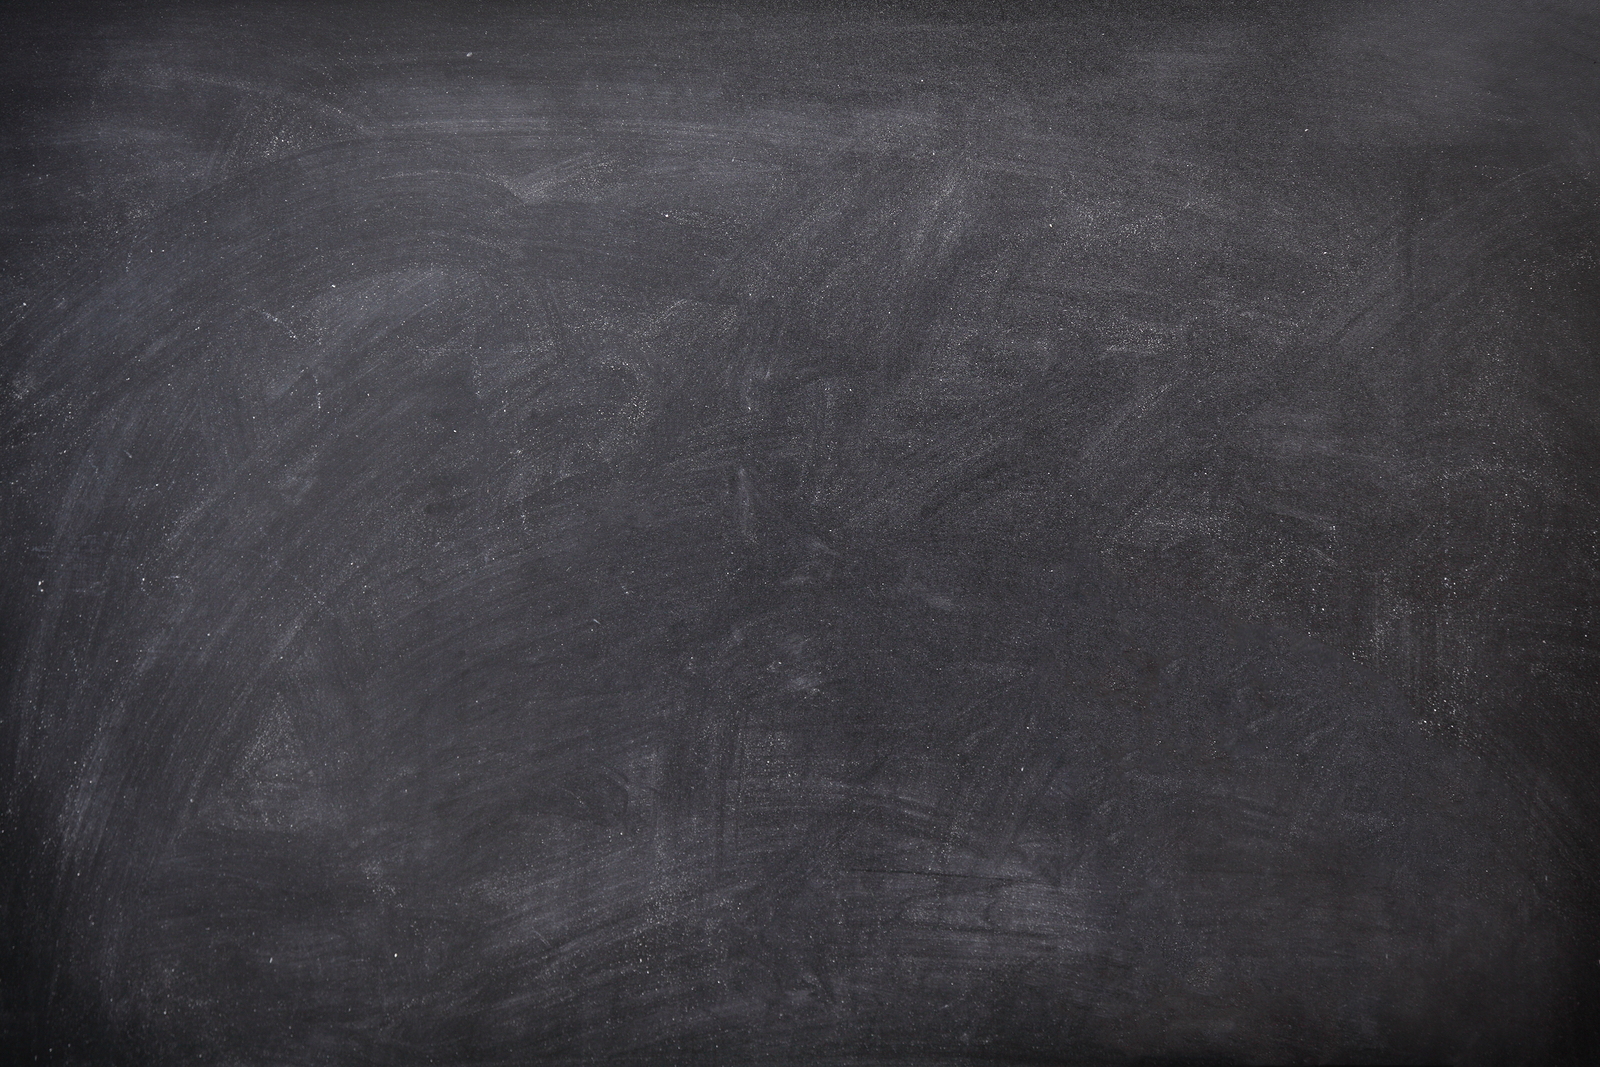 Blackboard / chalkboard texture. Empty blank black chalkboard – Cafe